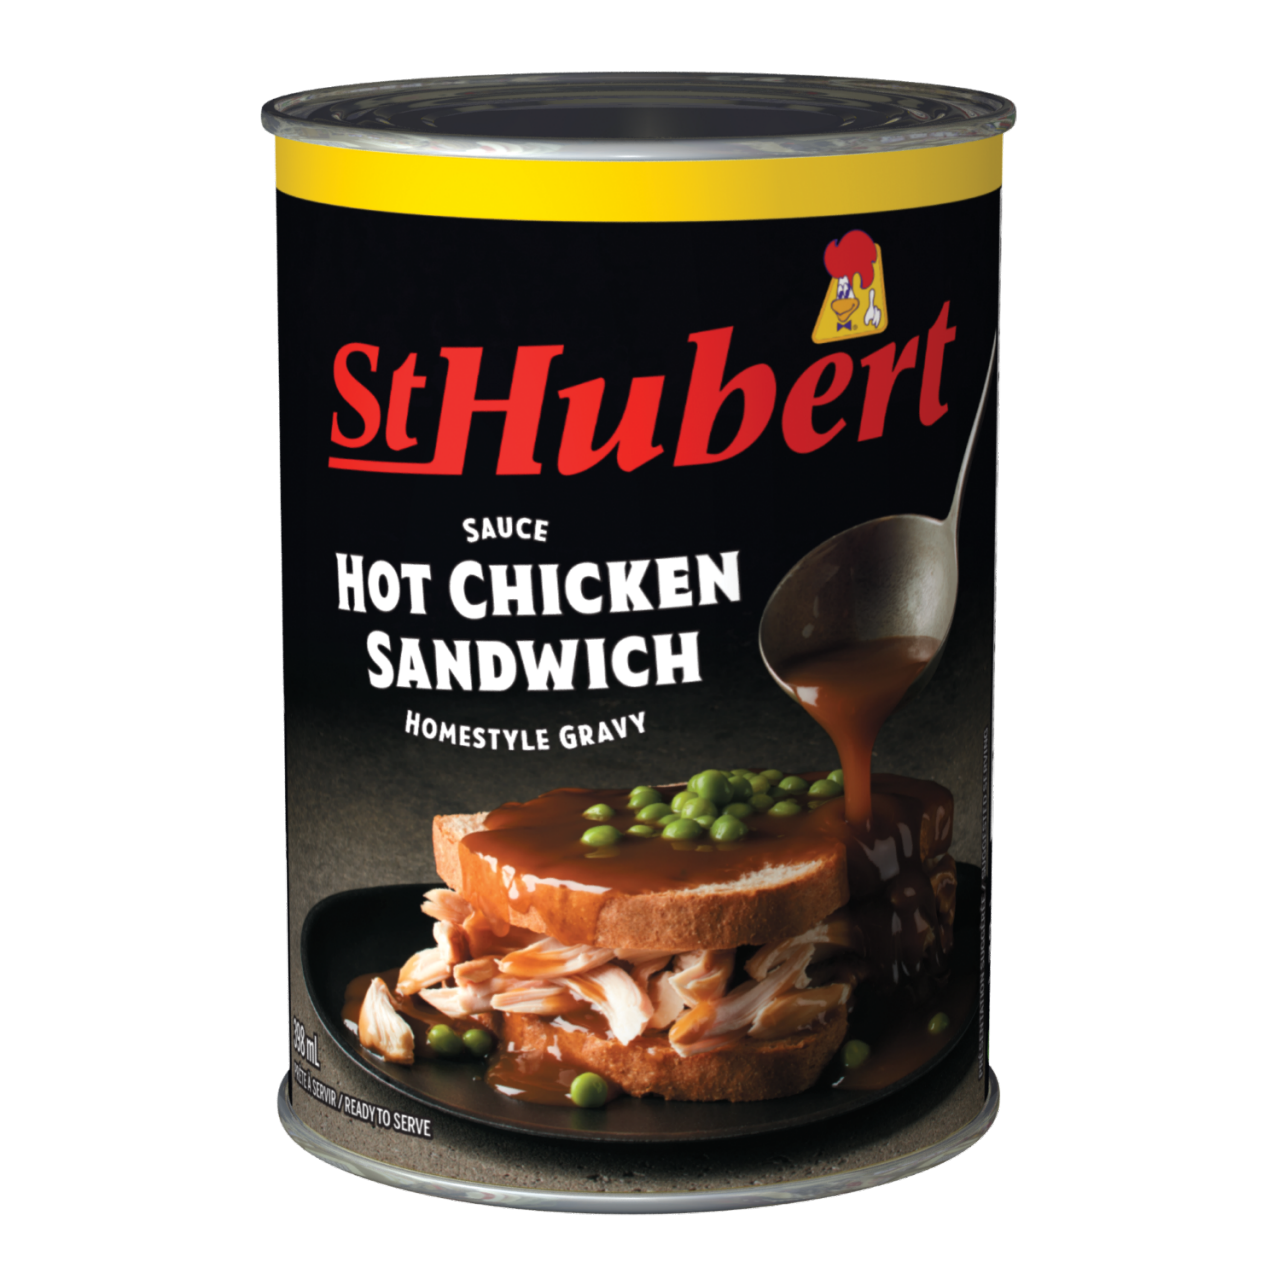 St-Hubert hot chicken sandwich homestyle gravy